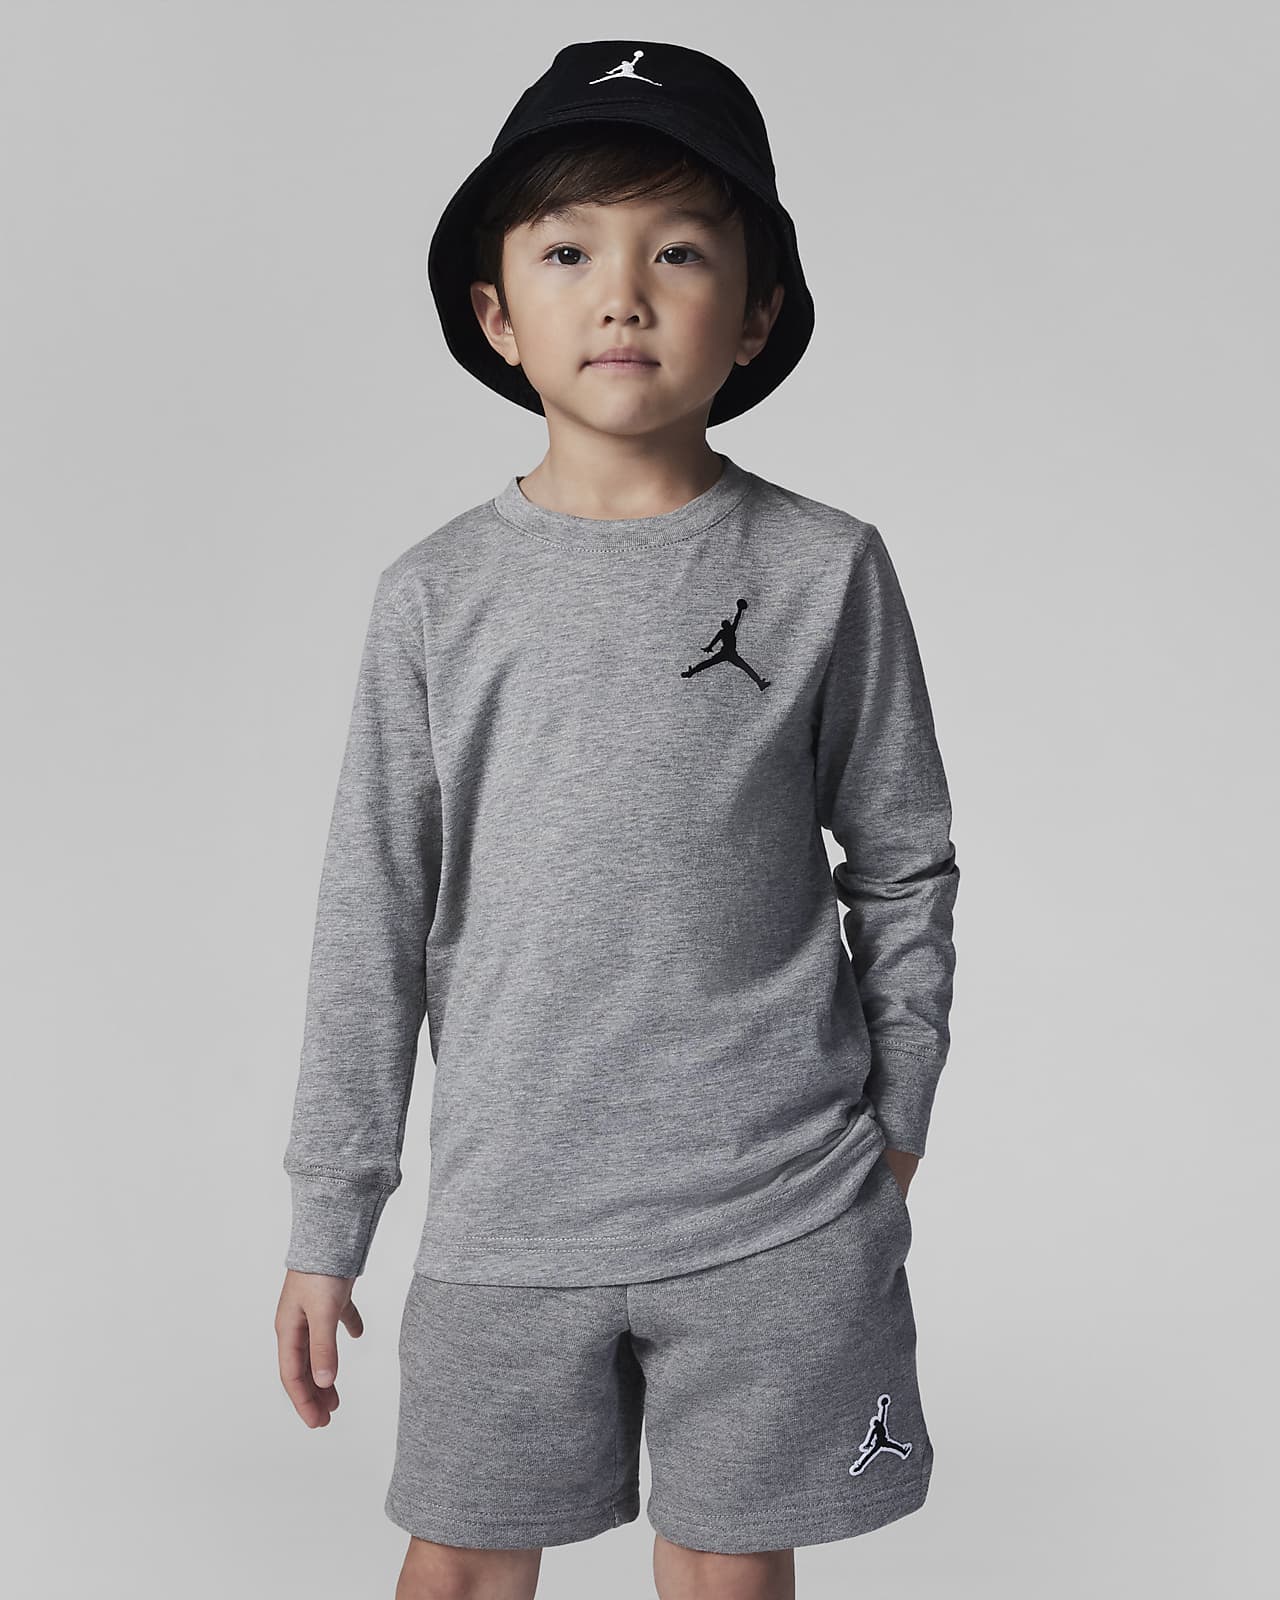 Jordan Jumpman Air Embroidered Long Sleeve Tee Little Kids' T-Shirt